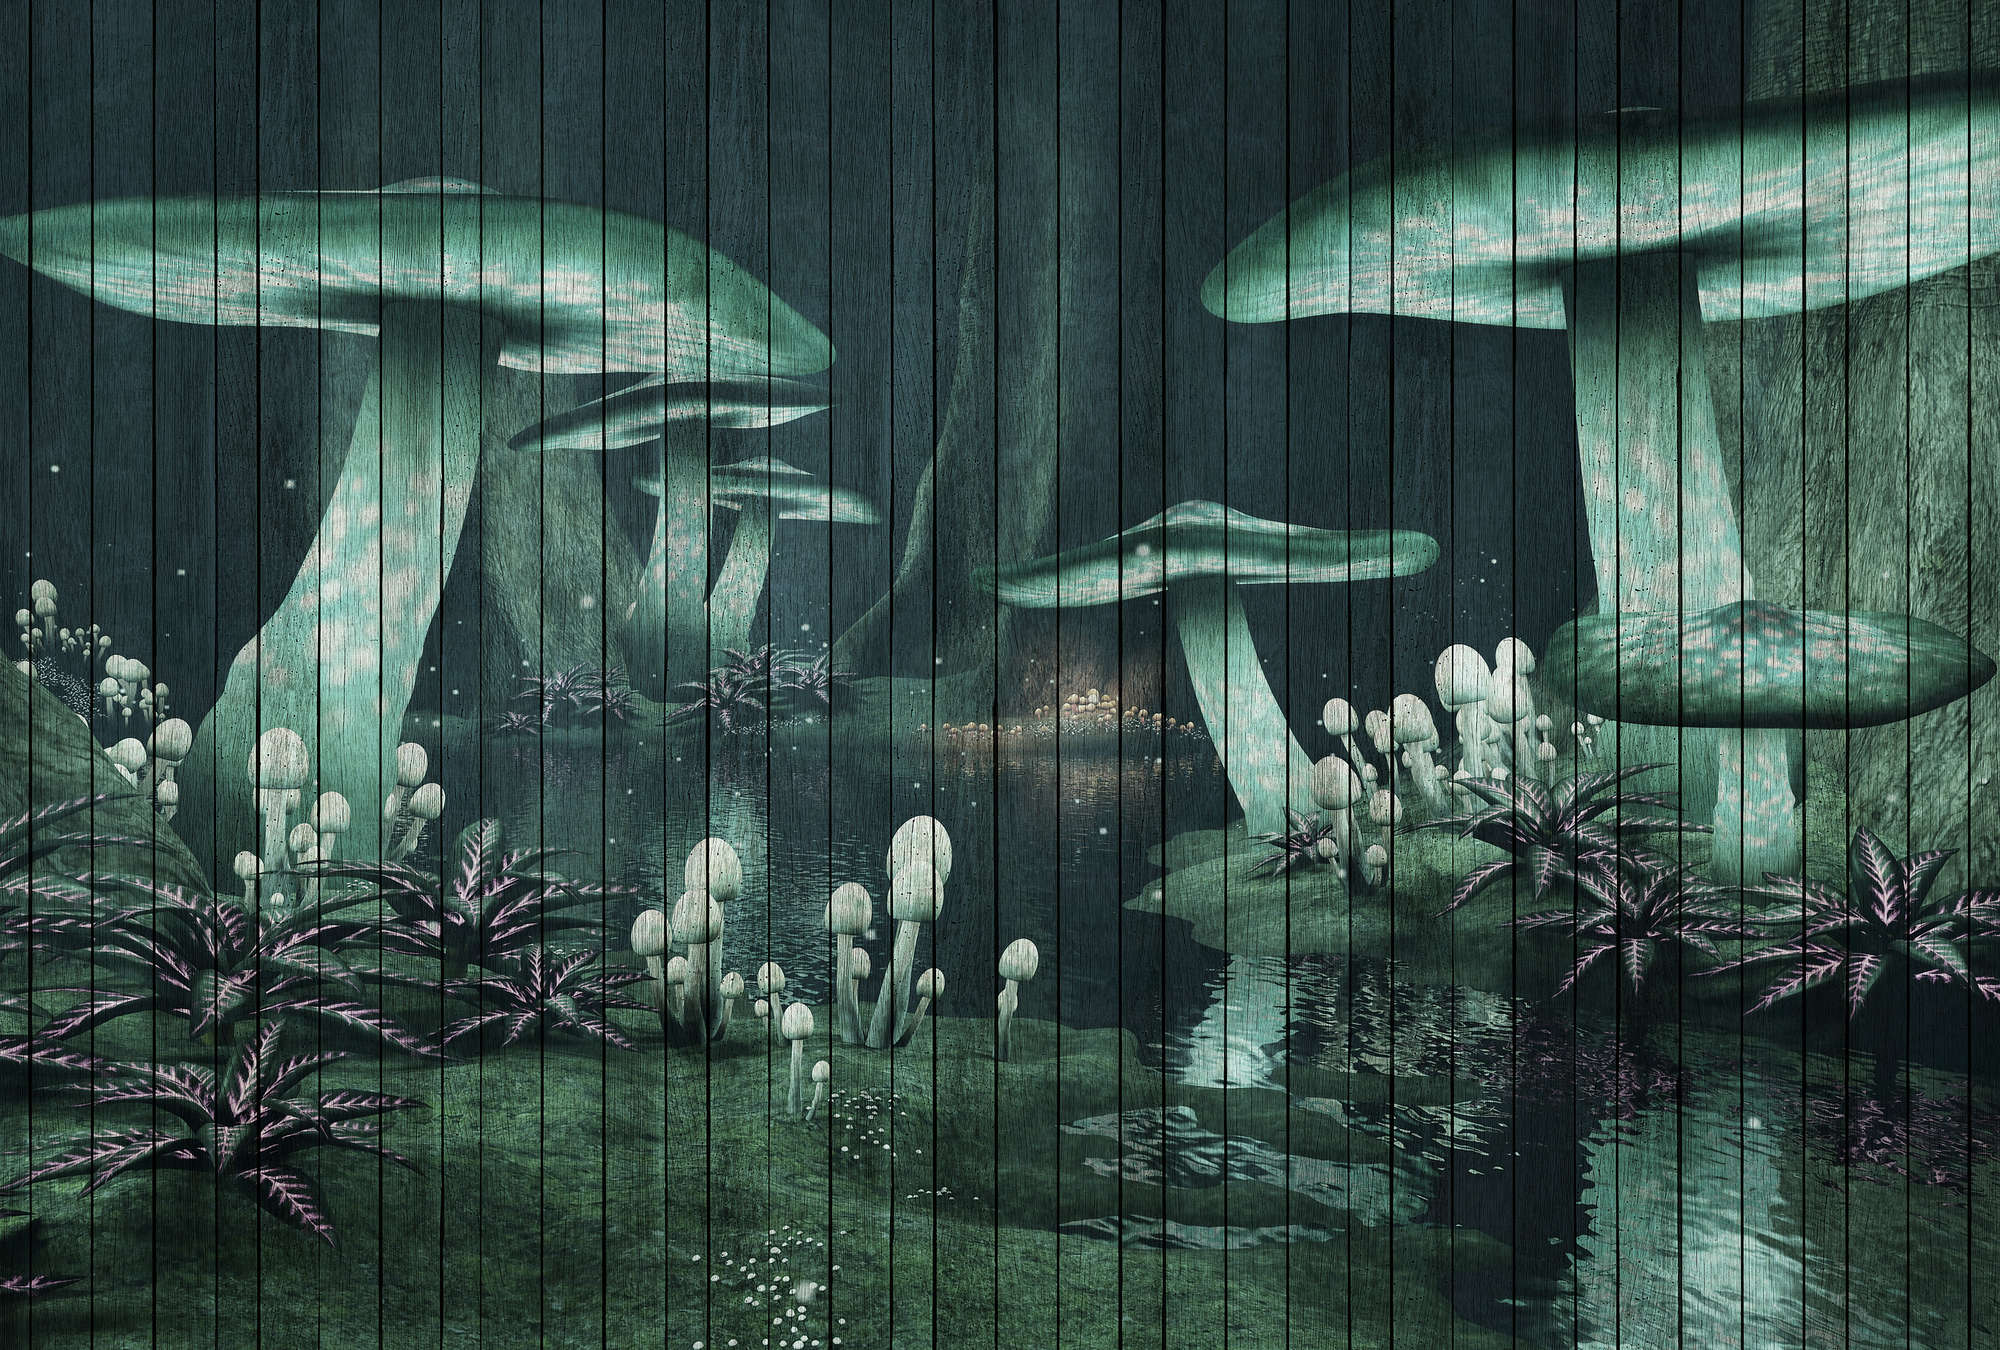             Fantasy 1 - Digital behang Betoverd bos met houtlook - Groen | Premium gladde fleece
        